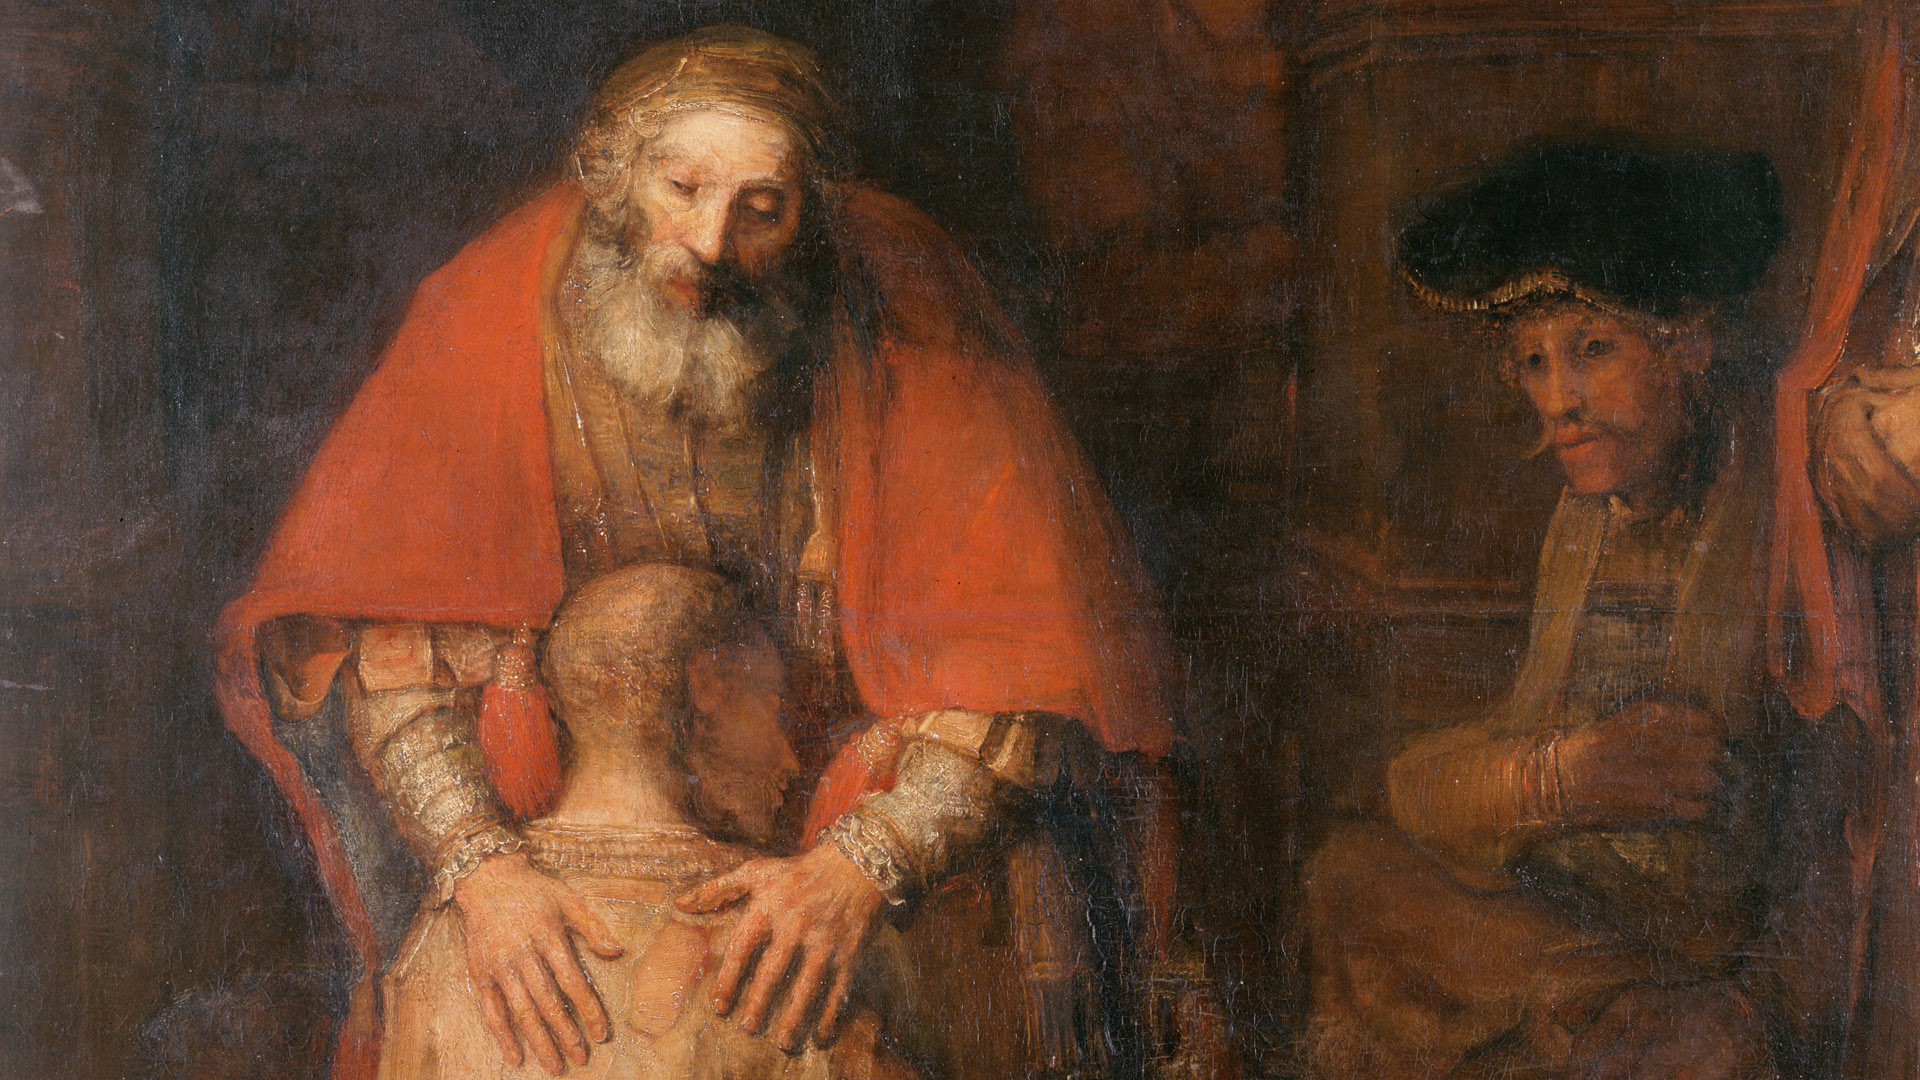 Der Vater herzt den zurückgekehrten Sohn, der zuvor abtrünnig geworden war: Annahme statt Verurteilung. Dieses Bild zeichnet Jesus von Gott – hier von der Hand des niederländischen Malers Rembrandt.